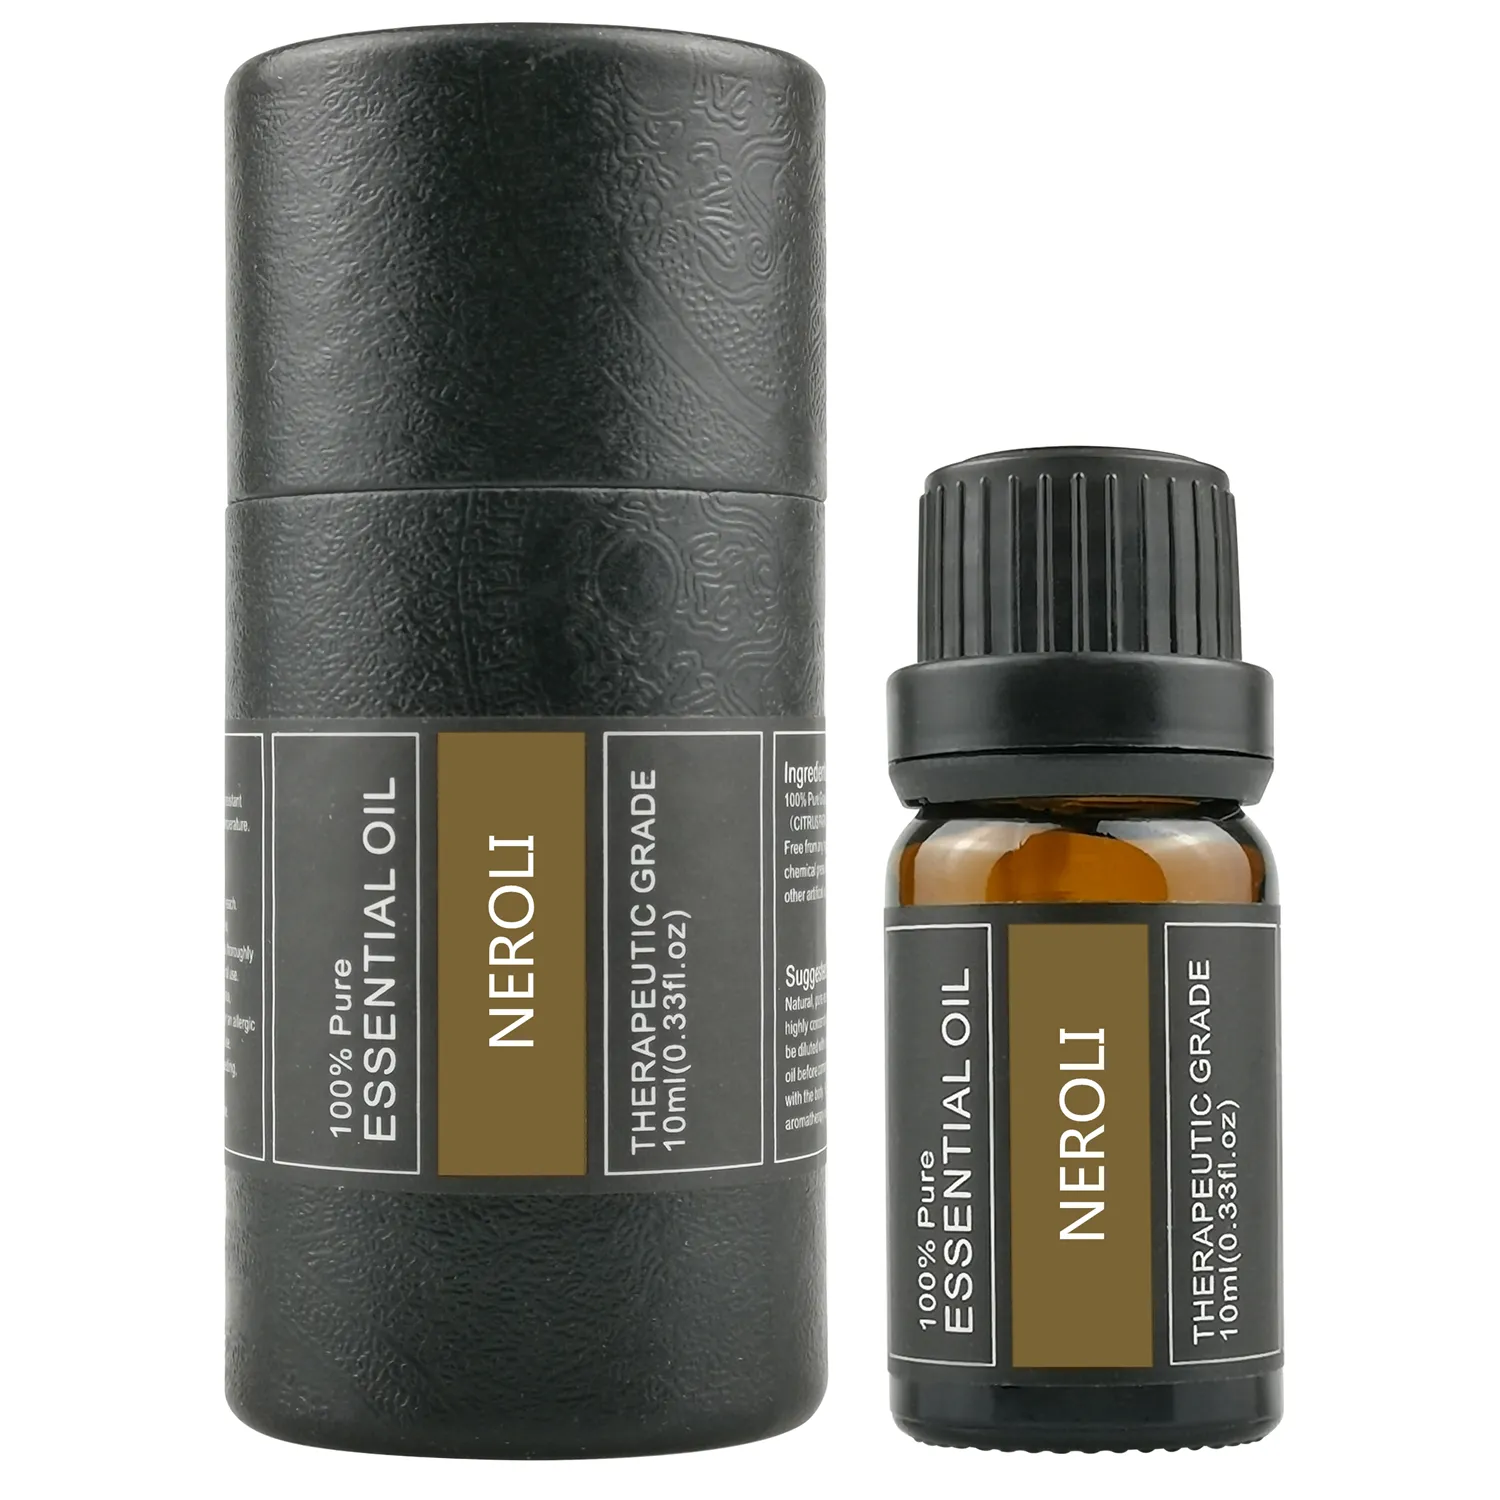 Diskon besar 100% minyak esensial Neroli organik alami murni untuk sabun diffuser dan pembuatan lilin